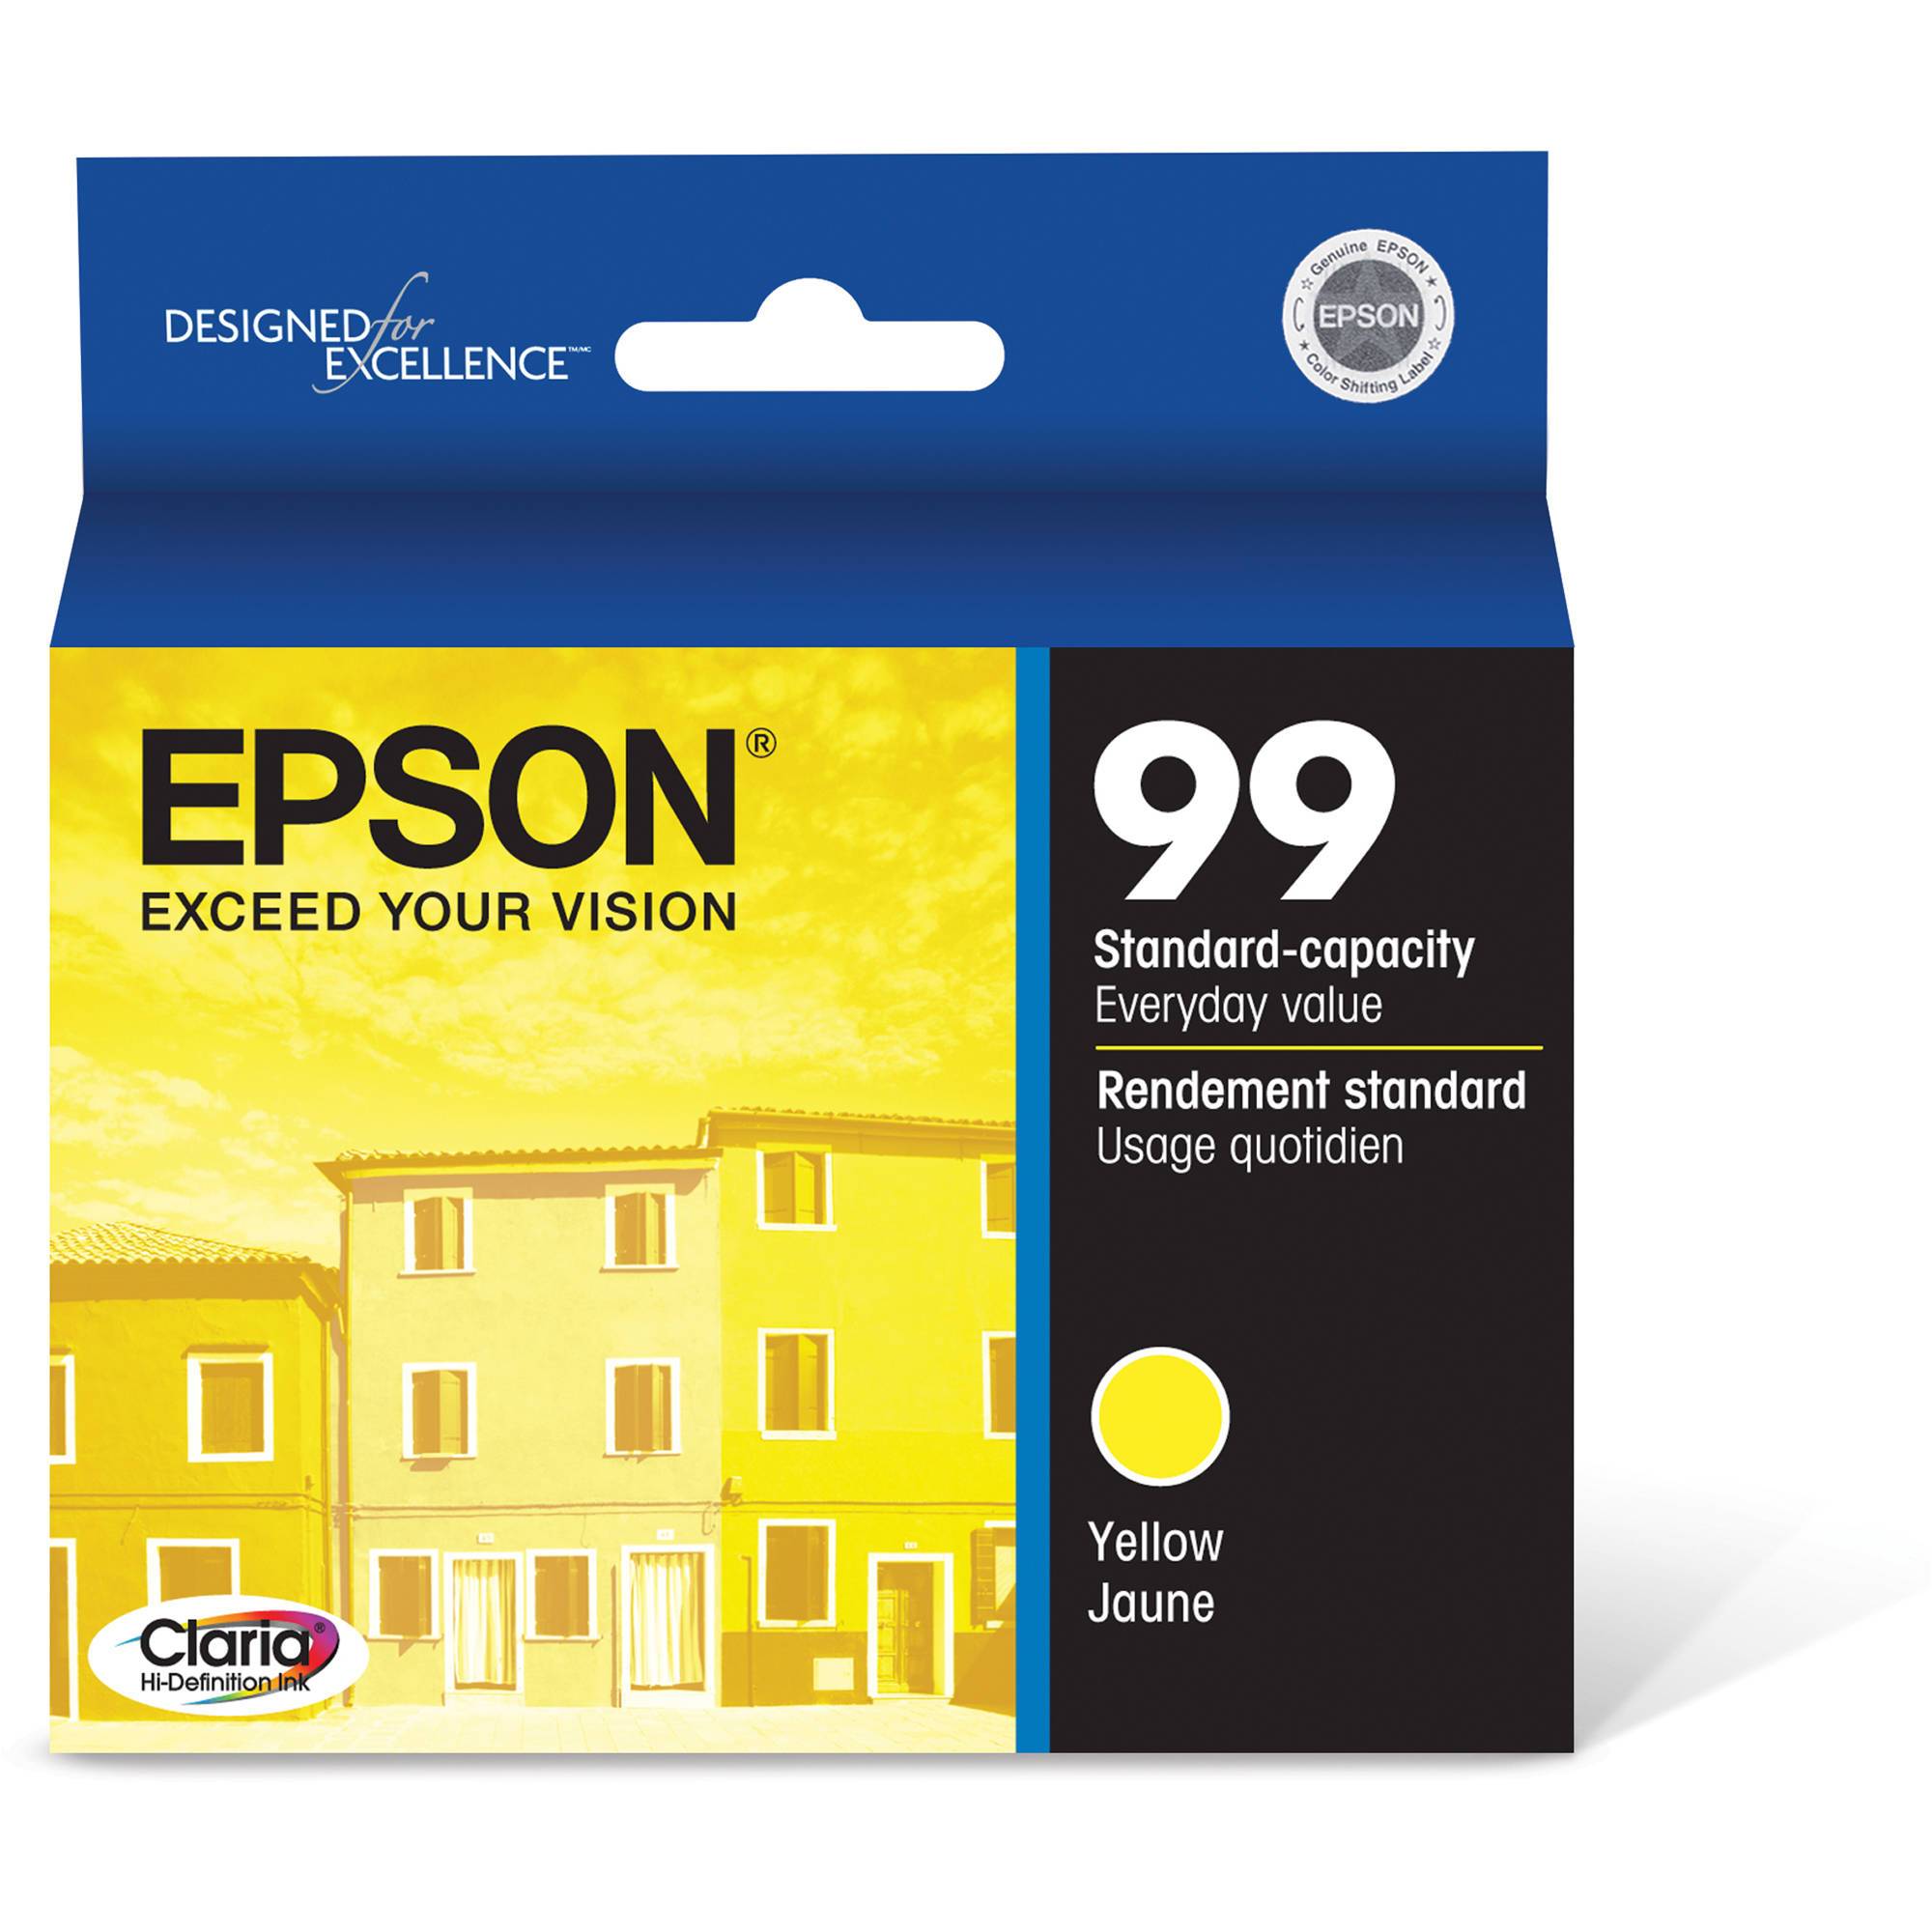 Absolute Toner Epson 99 Original Genuine OEM Yellow Ink Cartridge | T099420S Original Epson Cartridge